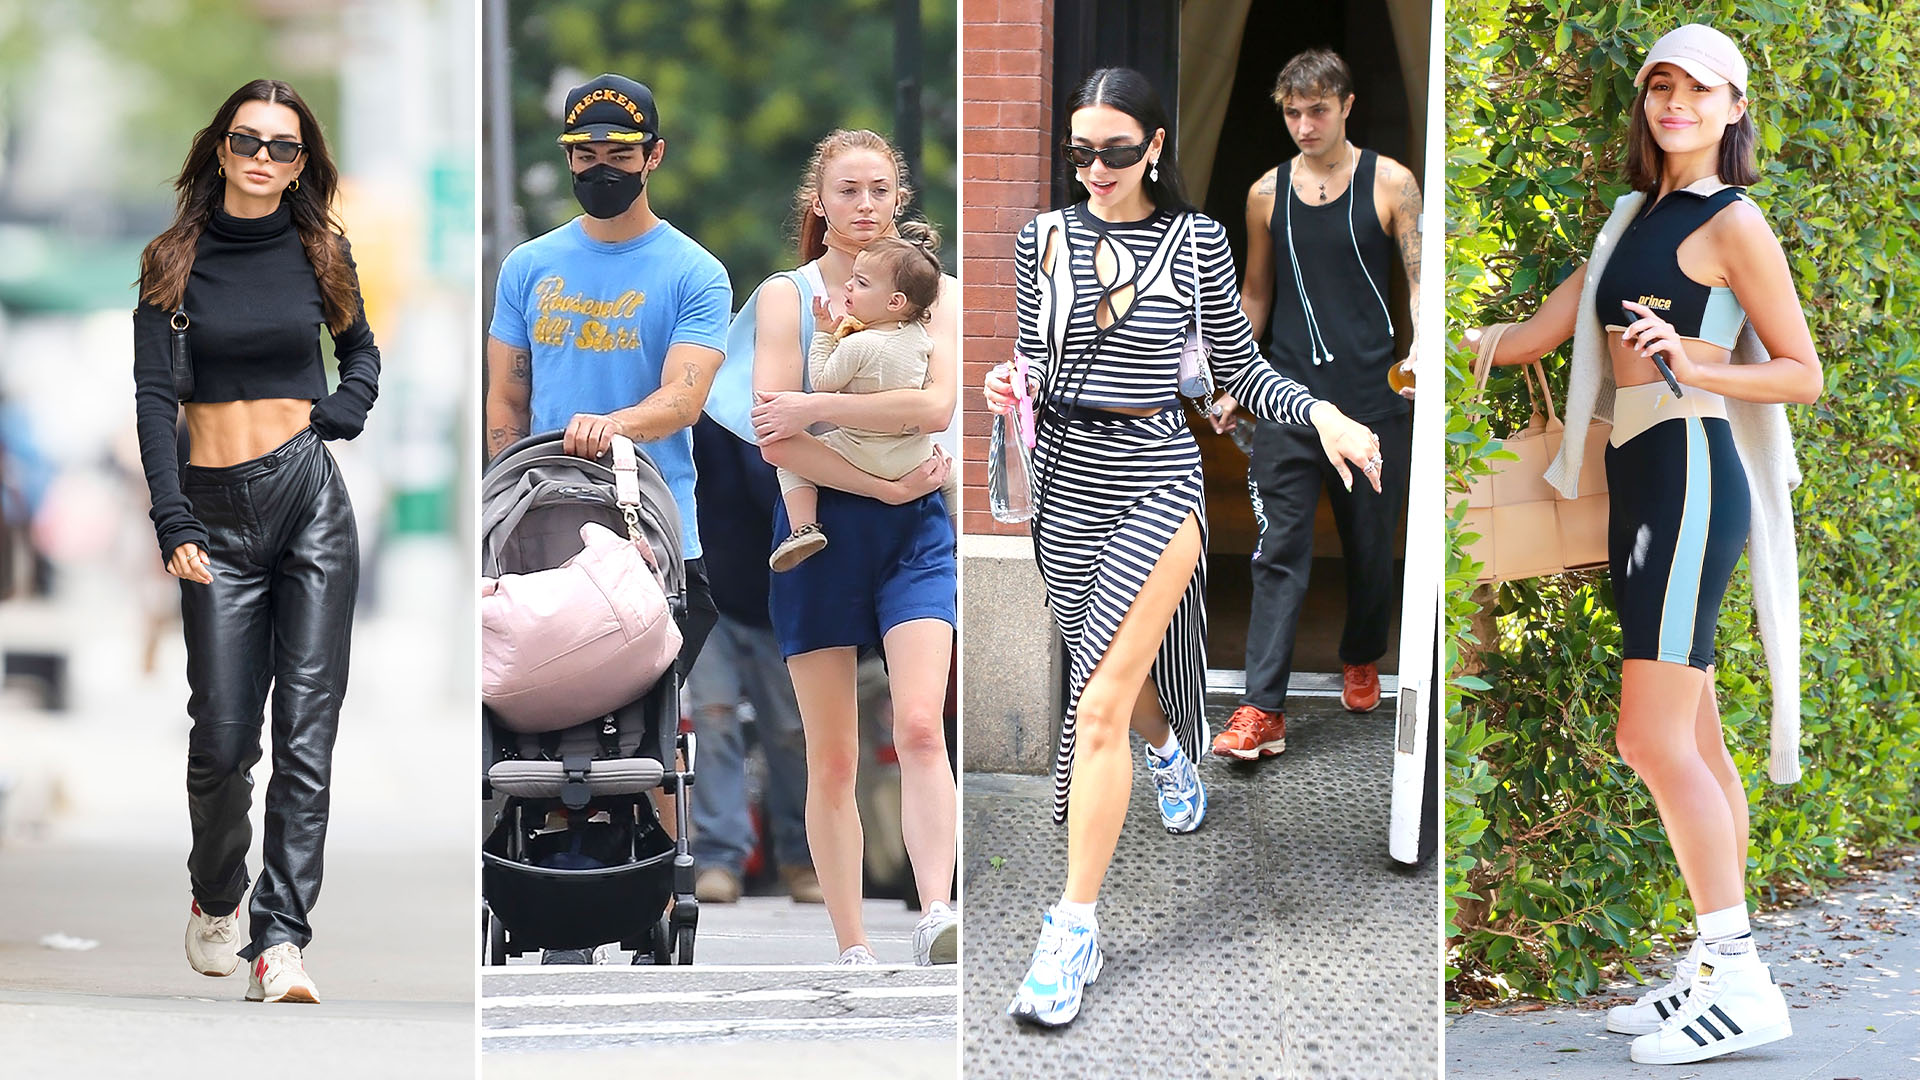 El paseo de Emily Ratajkowski, la salida familiar de Sophie Turner y Joe Jonas en Nueva York: celebrities en un click